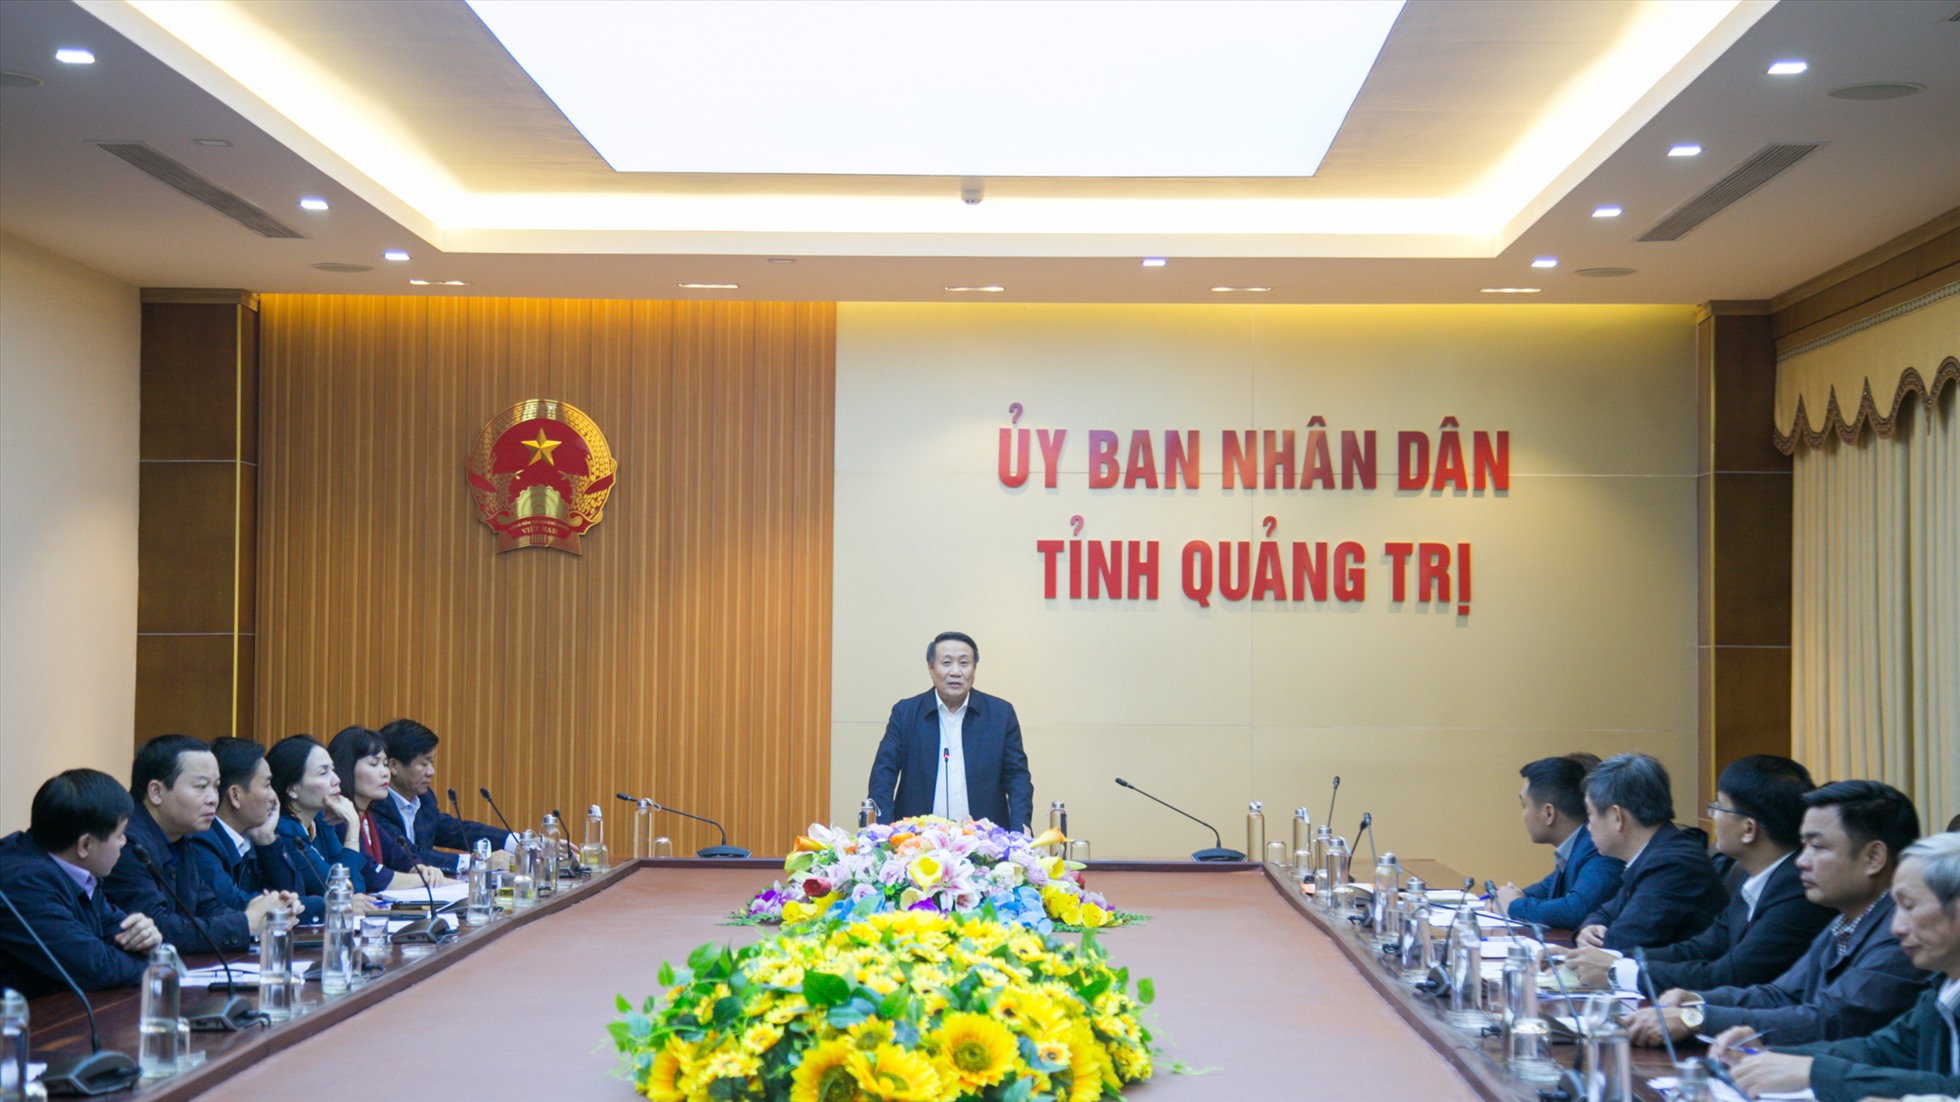 Cuộc họp của UBND tỉnh Quảng Trị liên quan đến dự án của Tập đoàn FLC. Ảnh: Hưng Thơ.